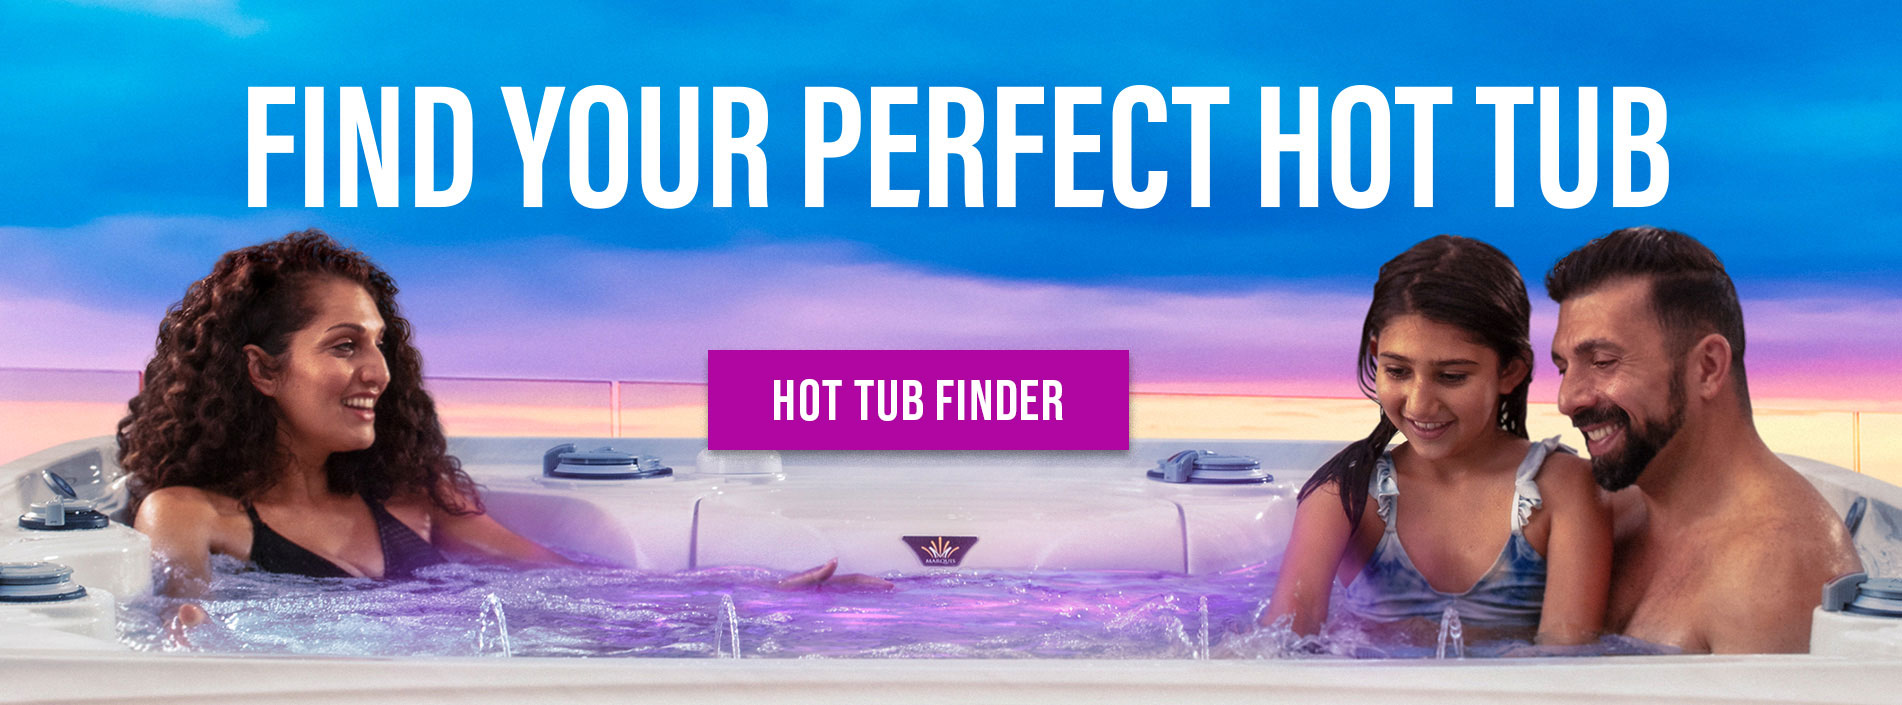 Hot Tub Finder